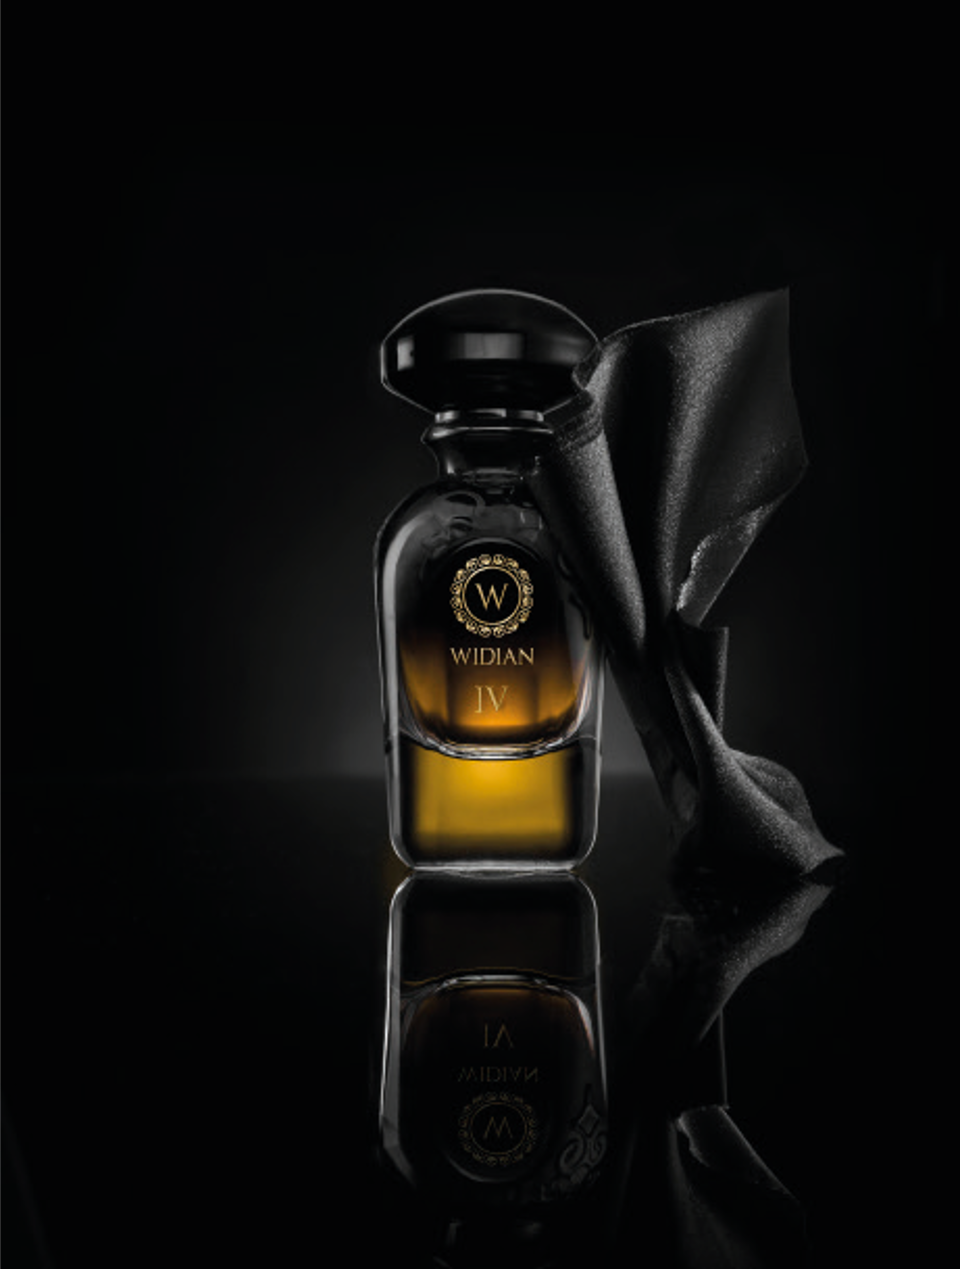 Luxus Parfum WIDIAN Black IV Parfum 50ml kaufen